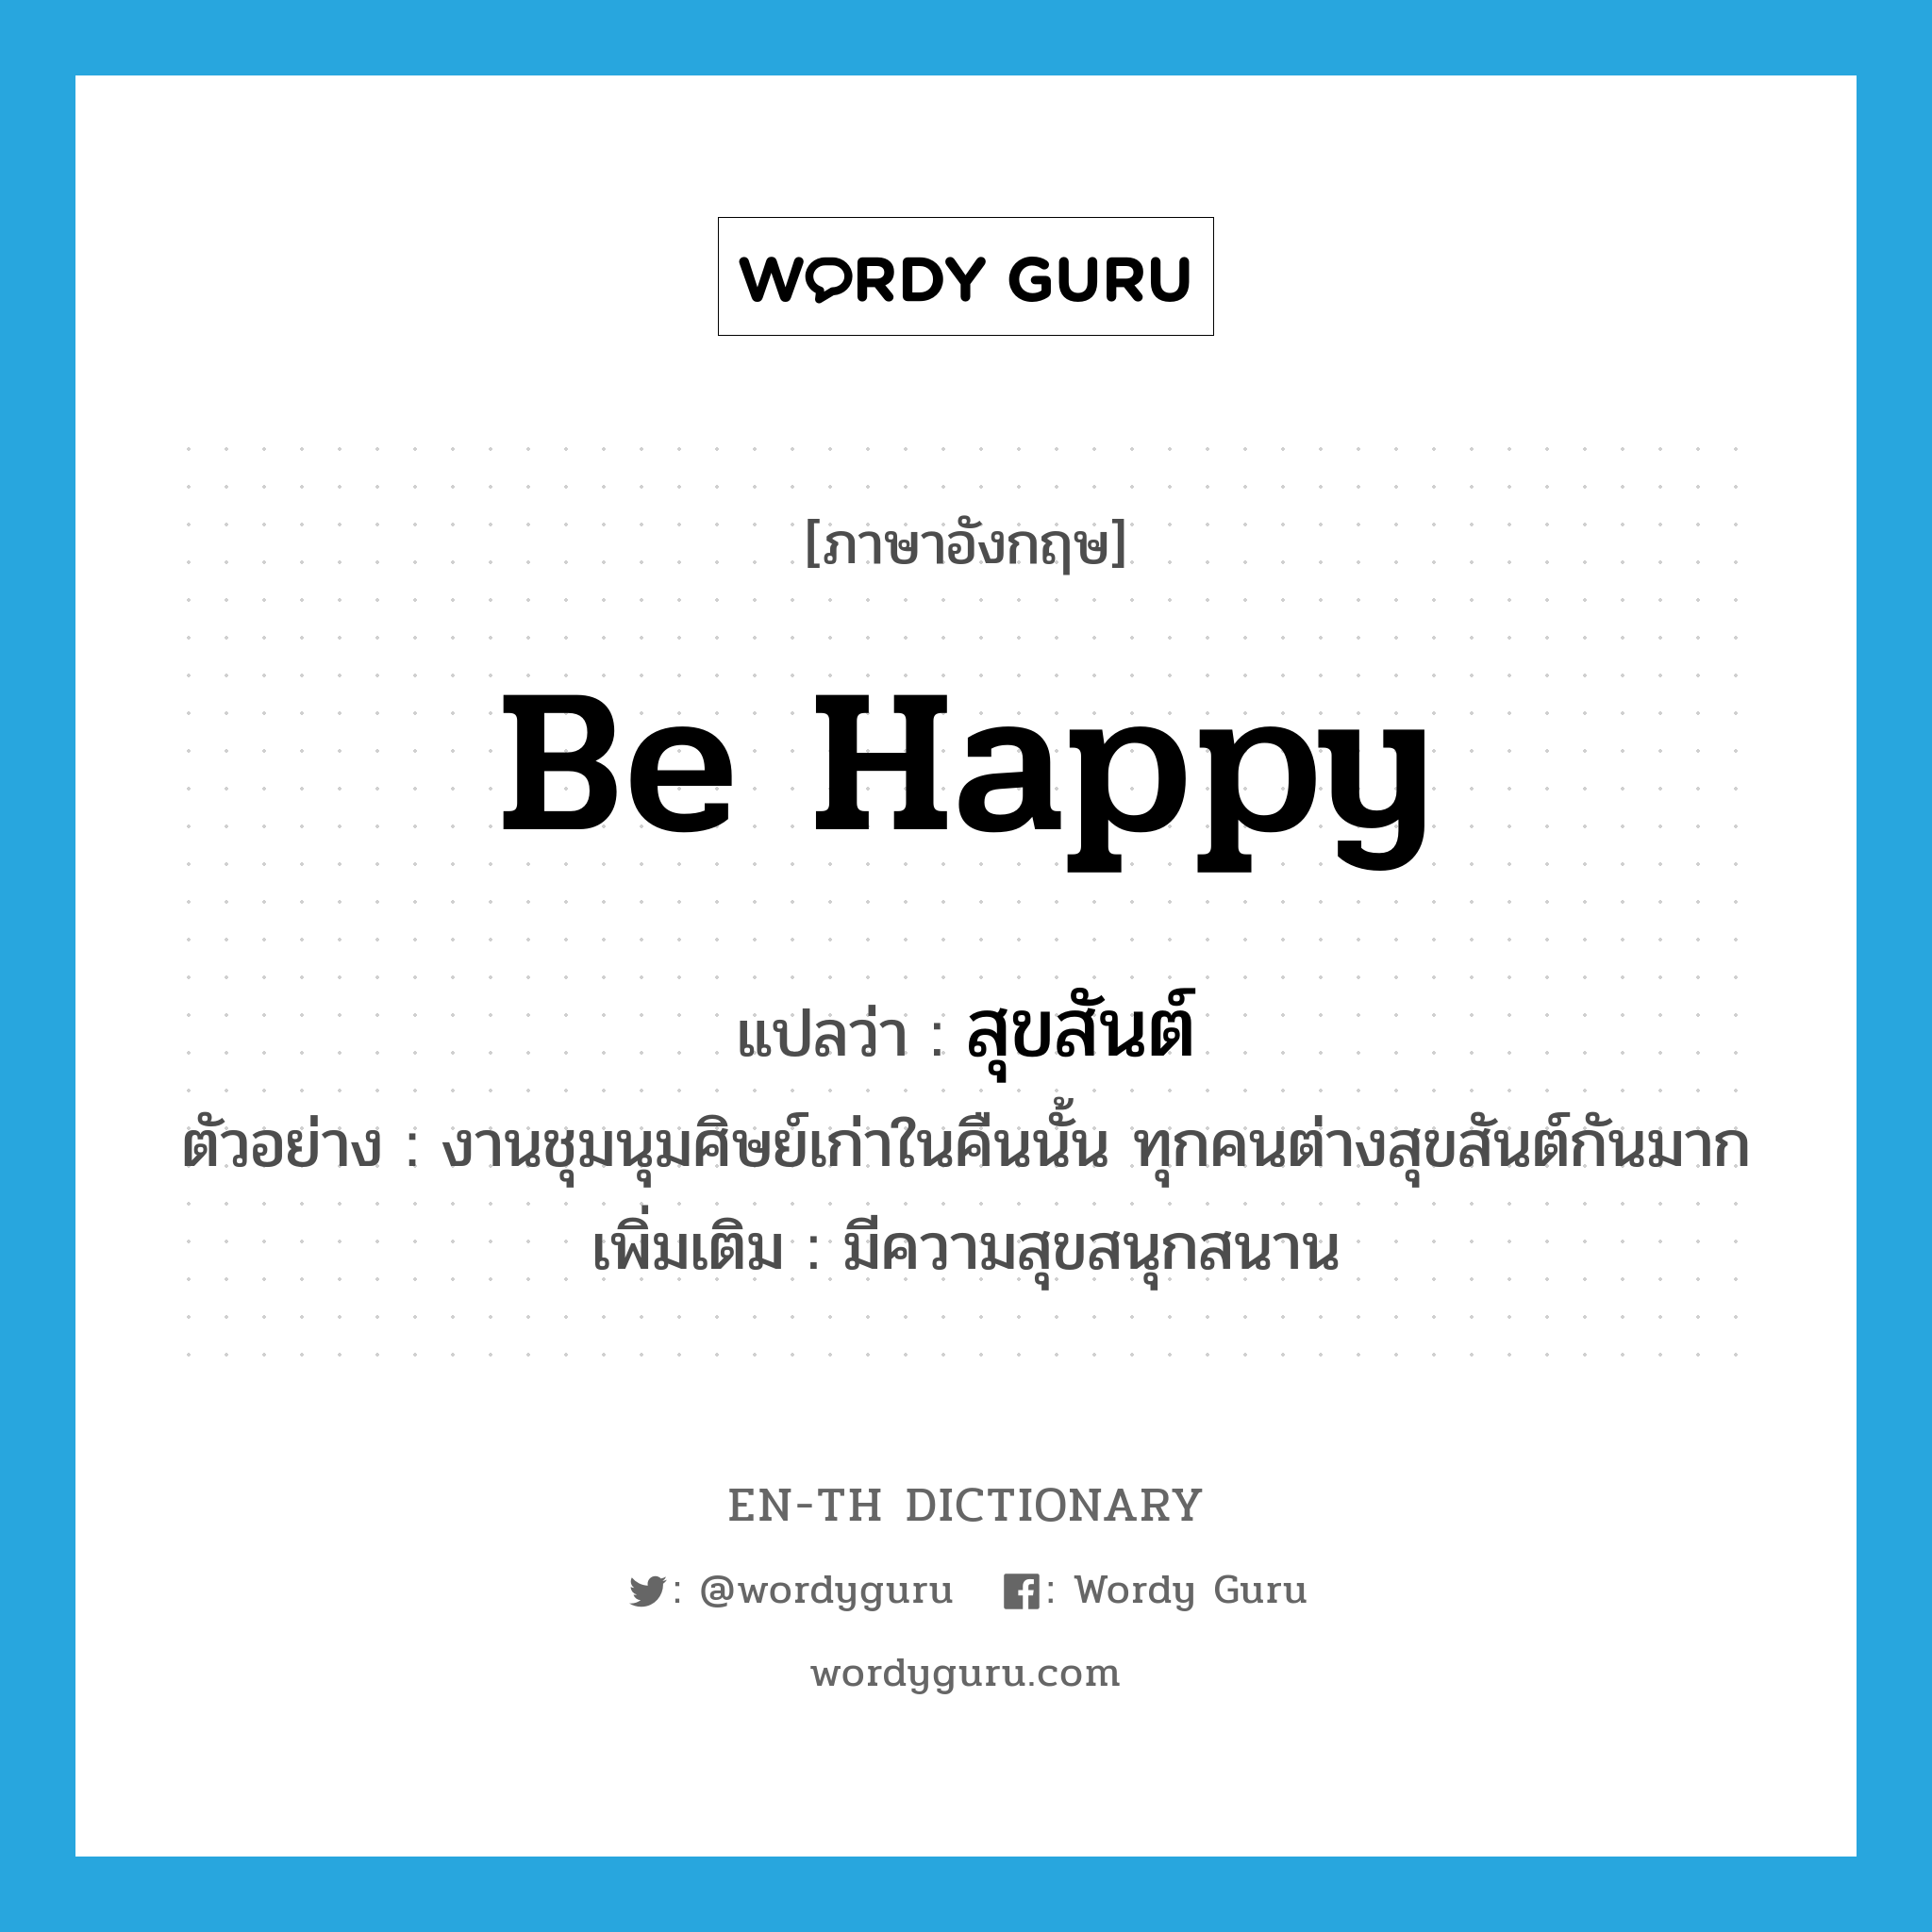 be happy แปลว่า?, คำศัพท์ภาษาอังกฤษ be happy แปลว่า สุขสันต์ ประเภท V ตัวอย่าง งานชุมนุมศิษย์เก่าในคืนนั้น ทุกคนต่างสุขสันต์กันมาก เพิ่มเติม มีความสุขสนุกสนาน หมวด V